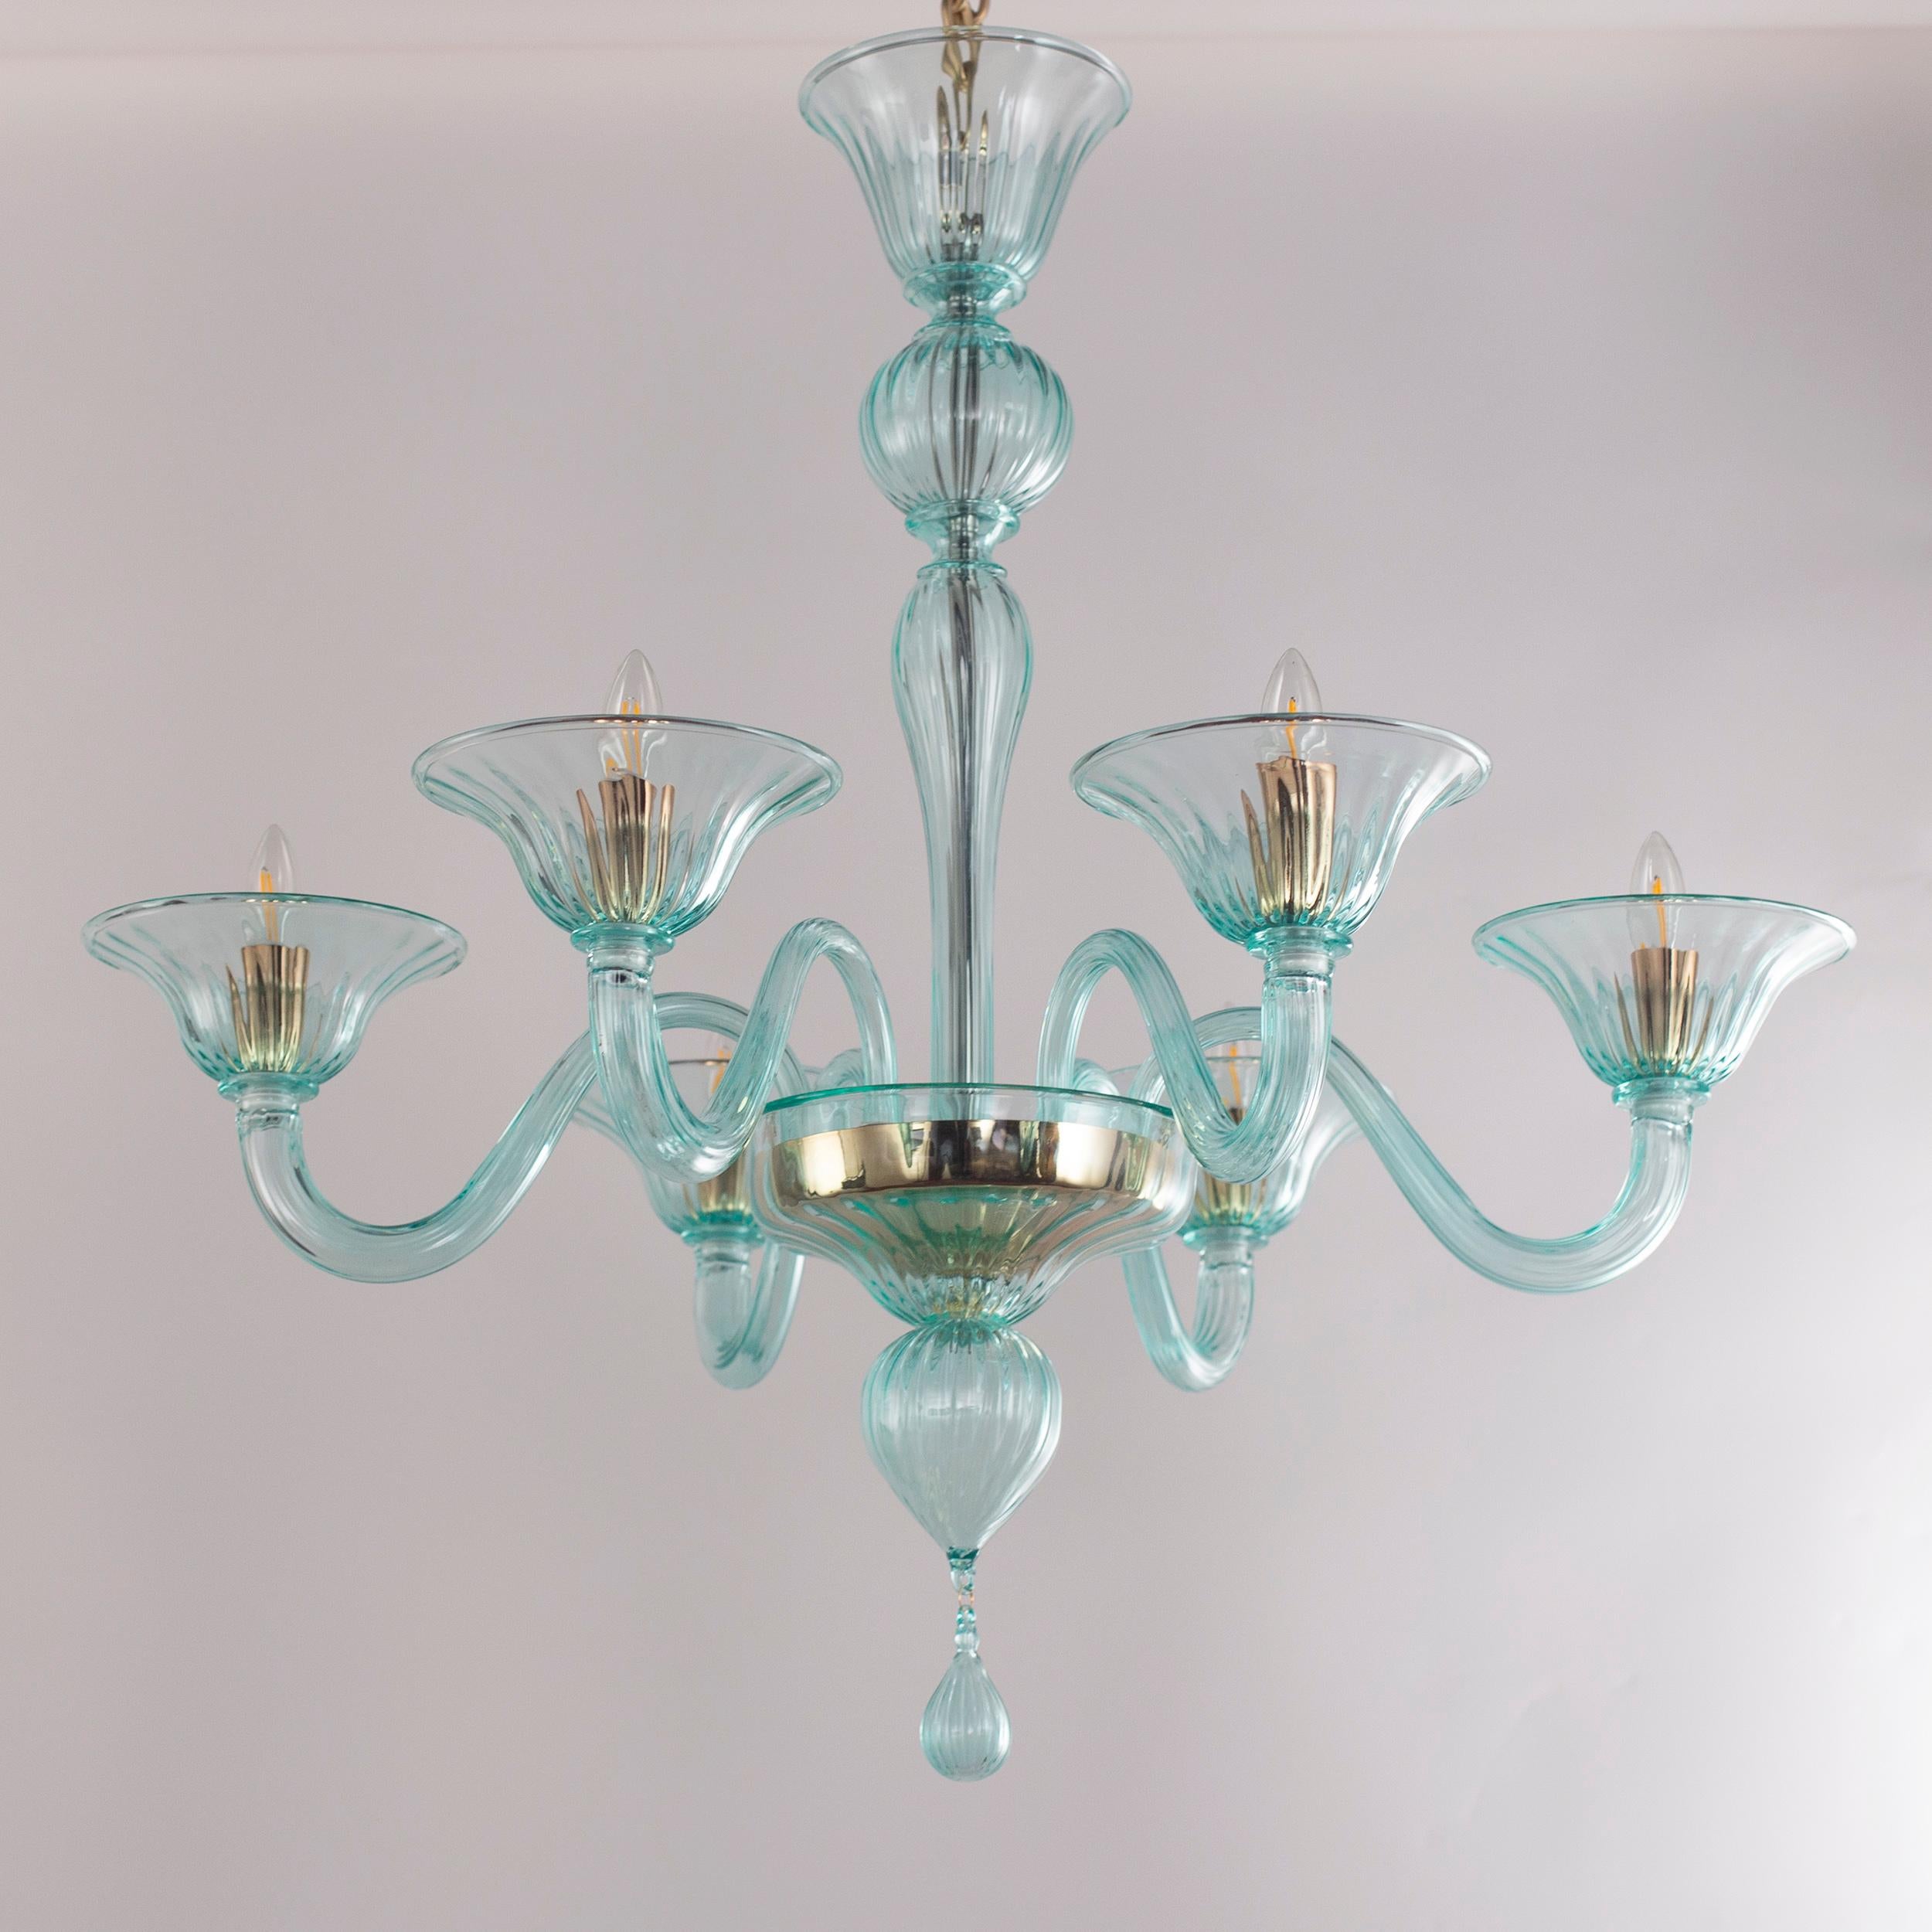 Simplicissimus 360 Kronleuchter, 6 Lichter, Helles Marin Grünes Kunstglas von Multiforme
Diese Collection'S aus Murano-Glas zeichnet sich durch ihre außergewöhnliche Schlichtheit aus. Es ist das Ergebnis einer Forschung, die auf die klassischen